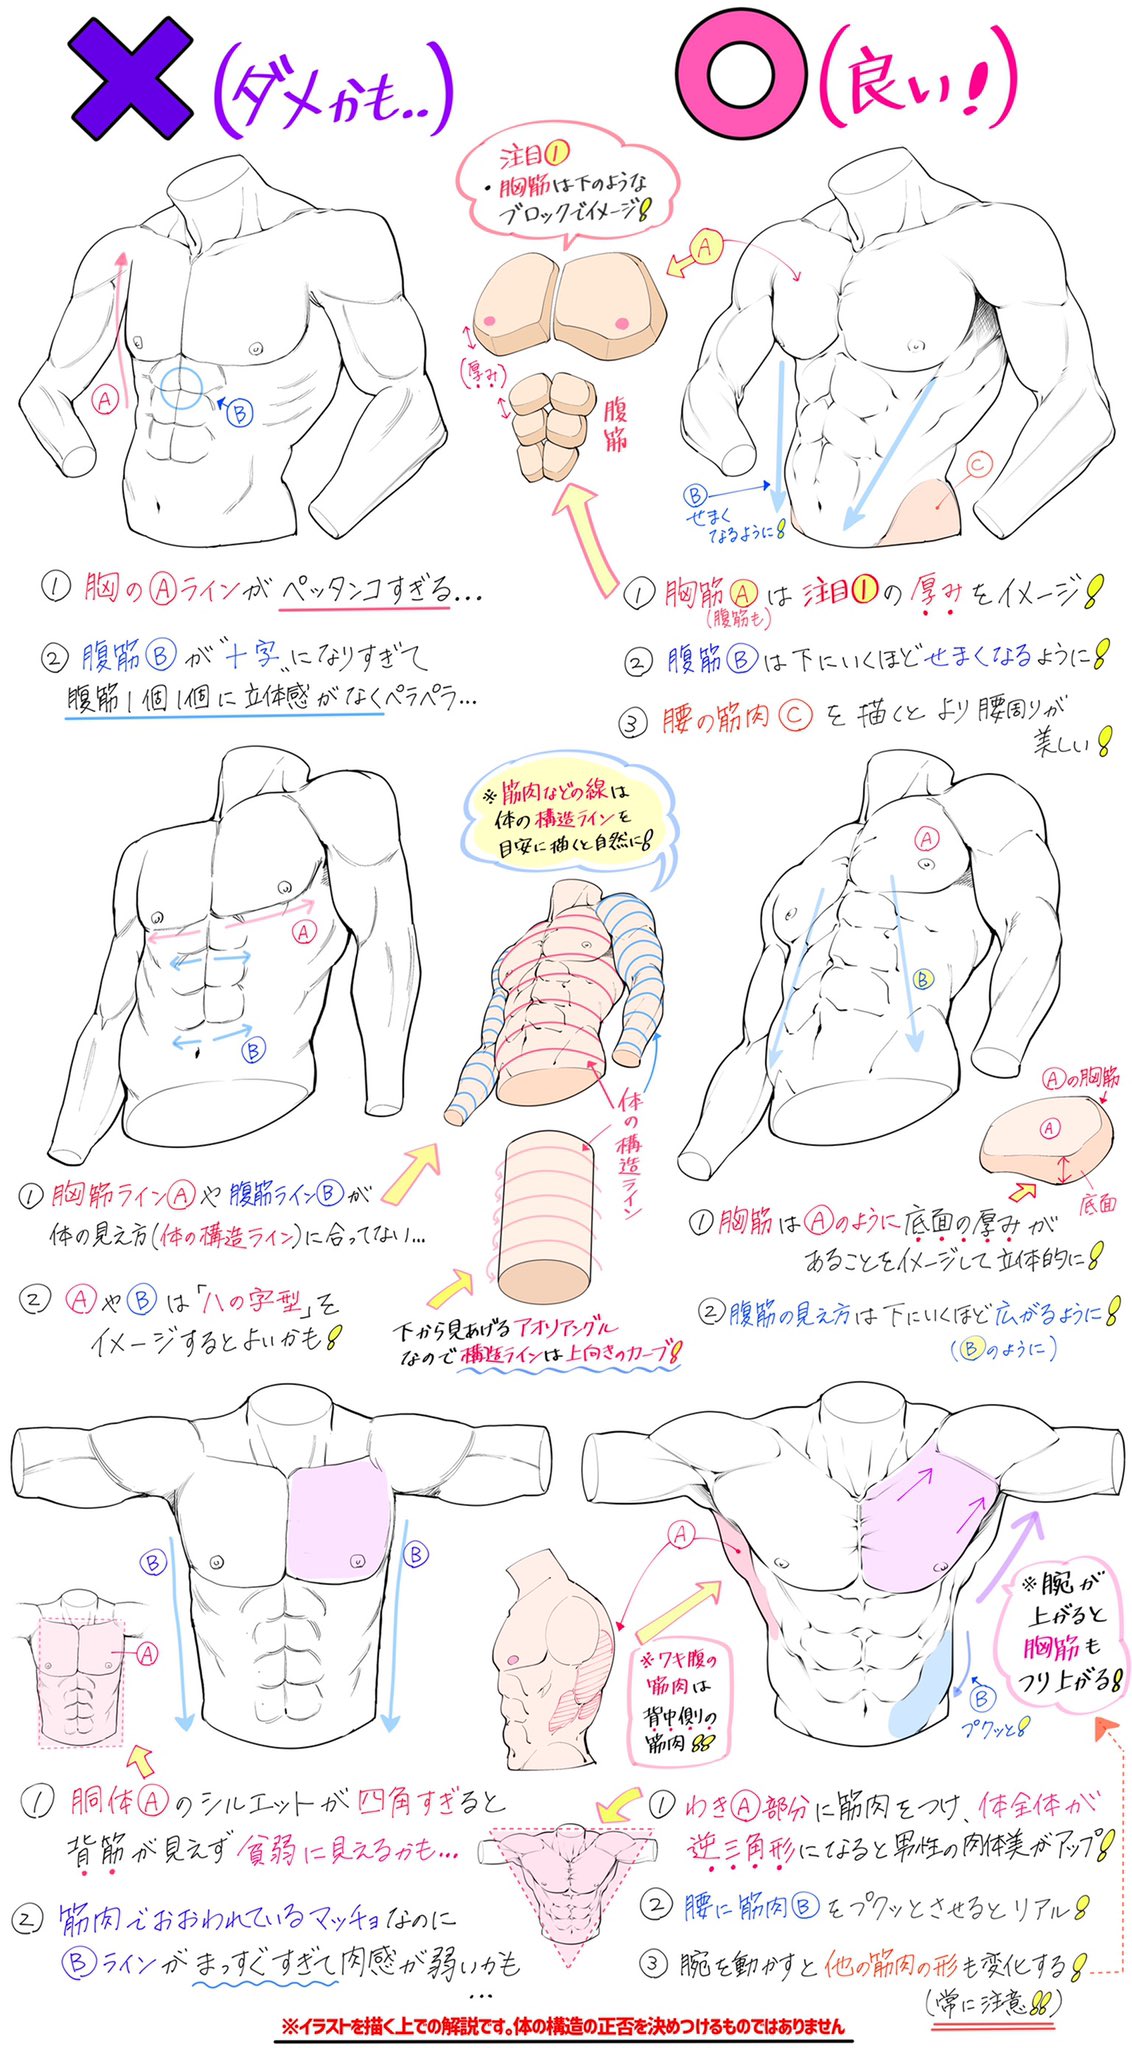 吉村拓也 イラスト講座 男性の筋肉が描けない てときの ヘタに見えやすい点 上手に見えやすい点 T Co t7bzsg2e Twitter